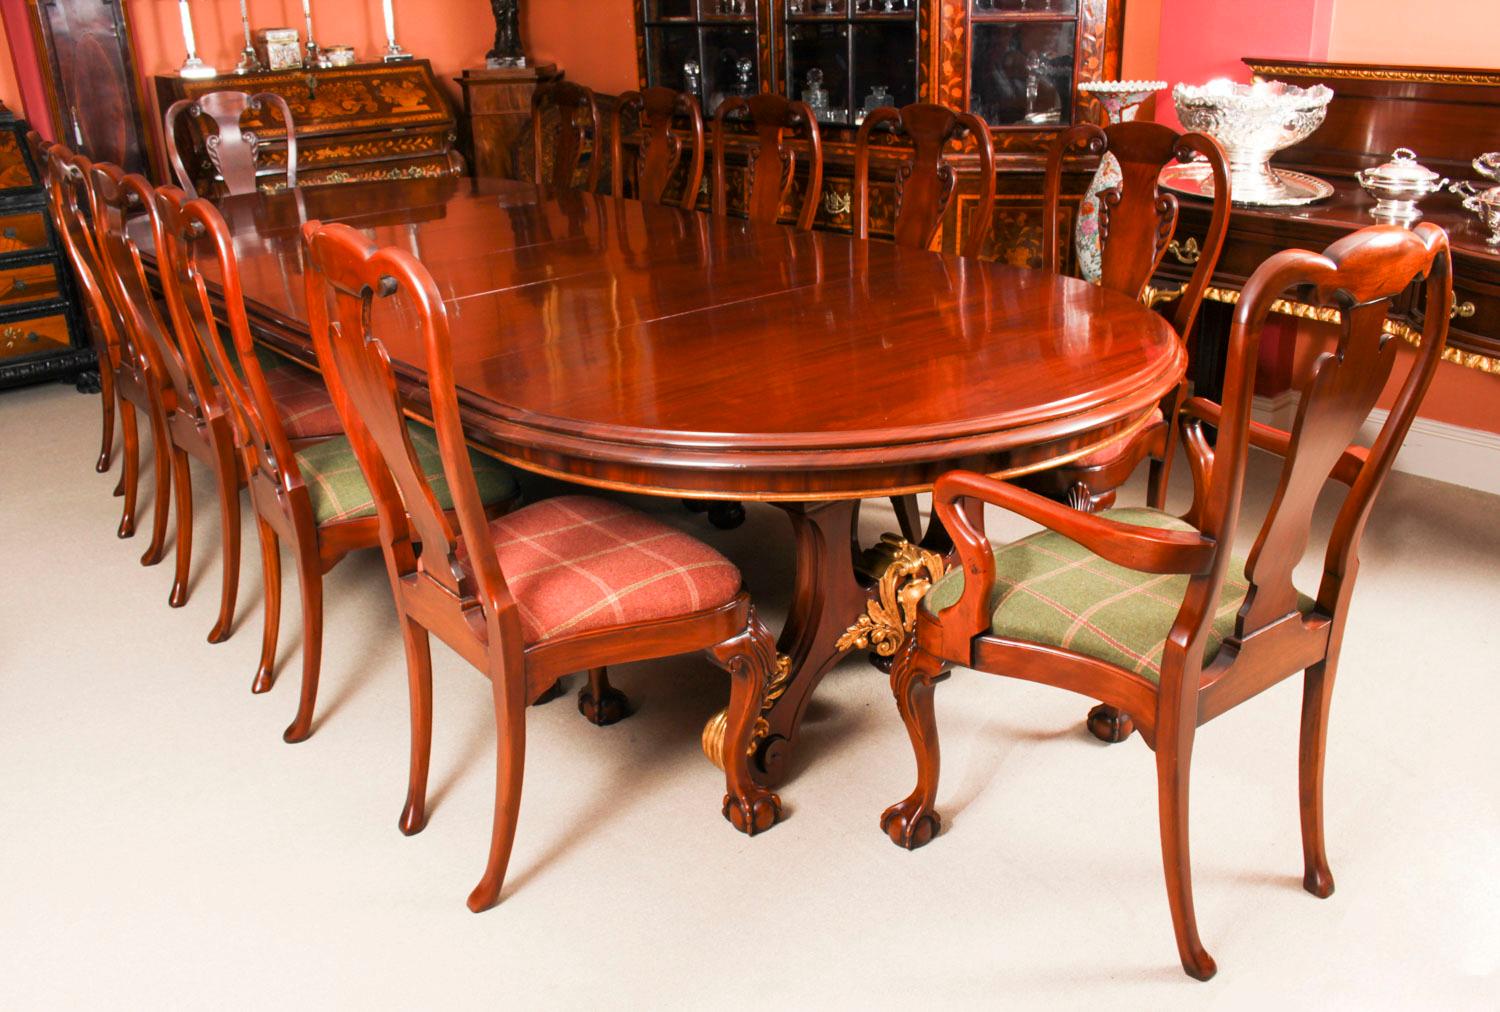 Fantastique table de salle à manger victorienne à deux piédestaux, en acajou et doré, portant la marque imprimée des célèbres ébénistes et détaillants Wylie & Lochhead, et datant d'environ 1850.
La table de forme ovale est fabriquée en acajou massif